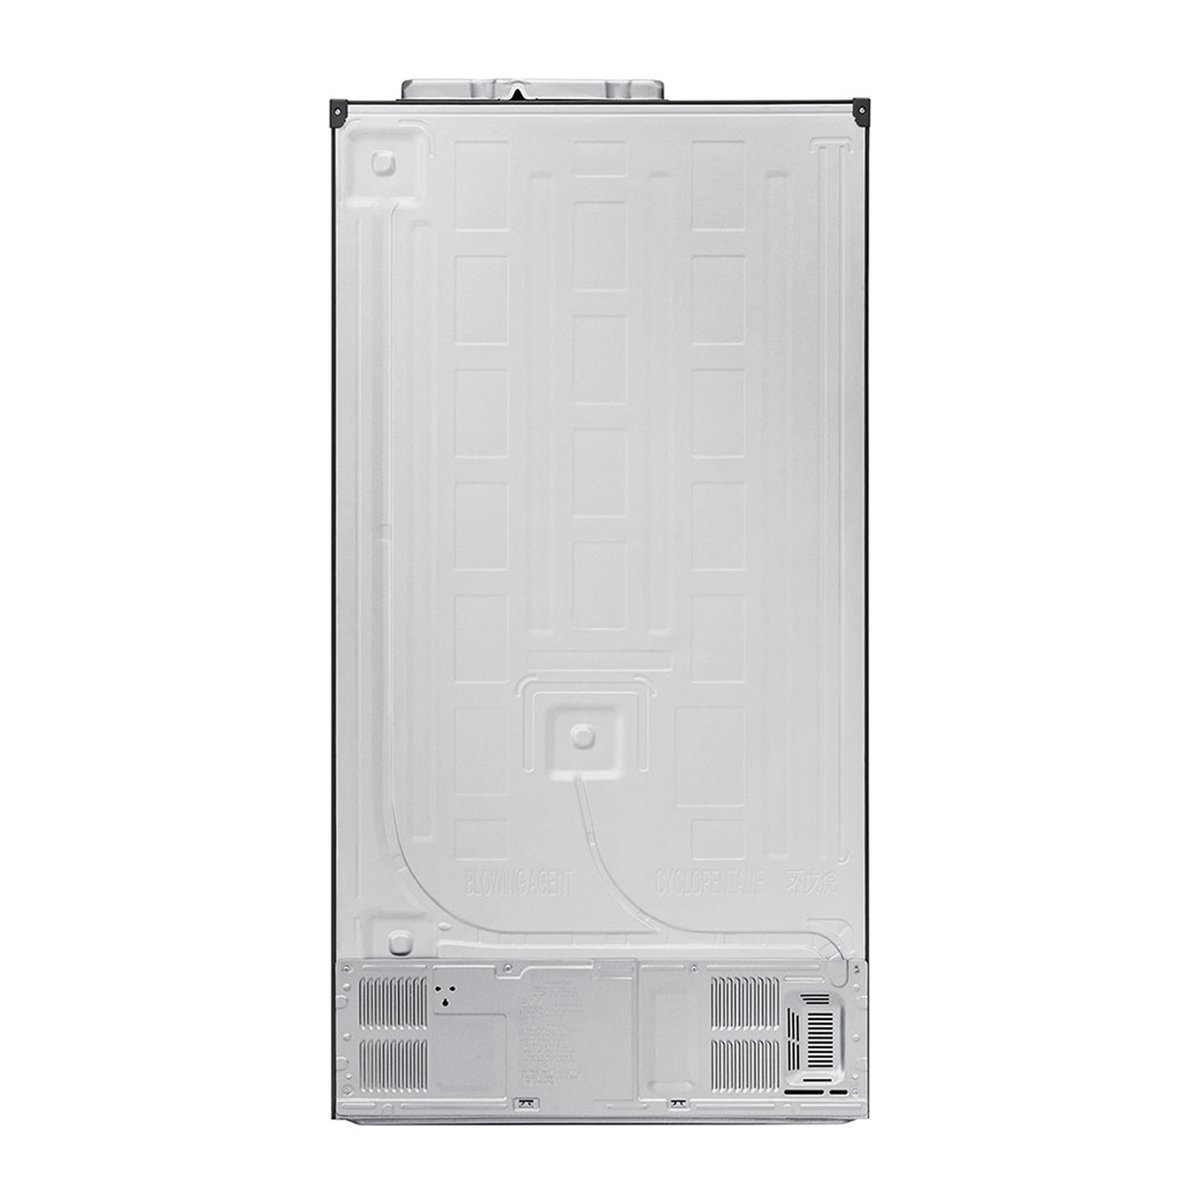 LG Side by Side Refrigerator GR-B257KQDV 627Ltr, Moist Balance Crisper™, ENERGY SAVINGS, Optimal Low Noise Performance